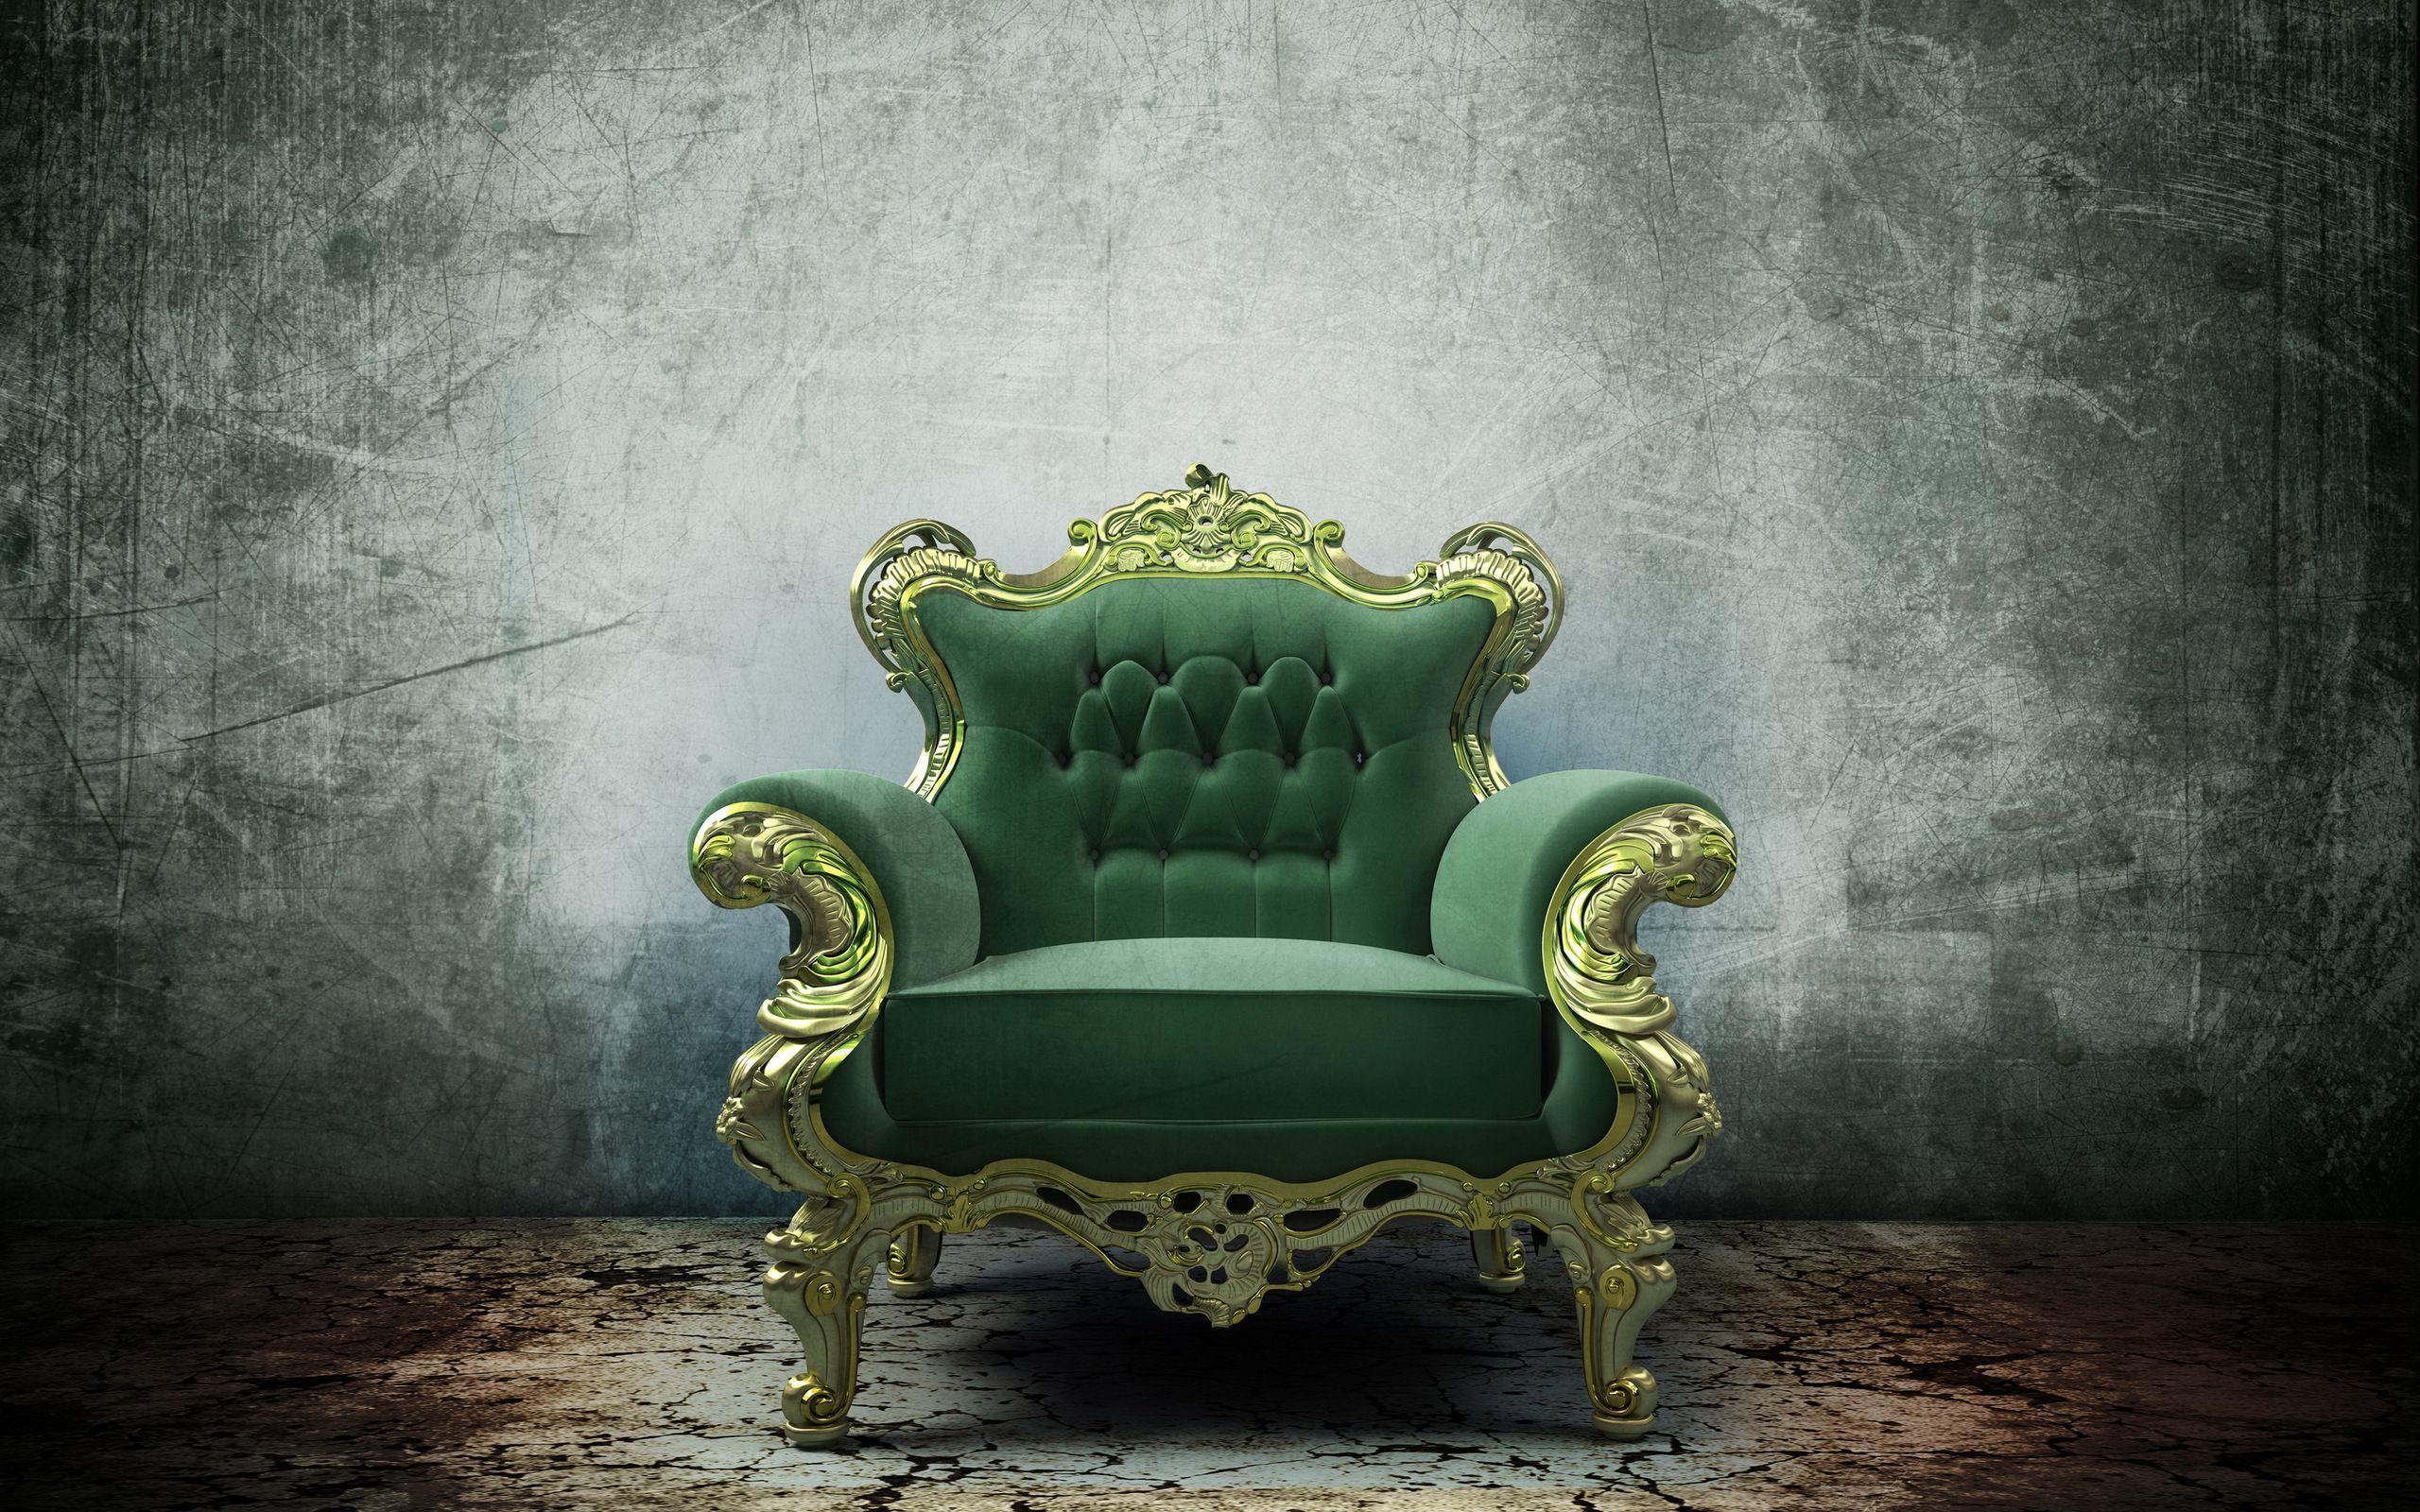 Ghế vua (King chair): Bạn có muốn thấy chiếc ghế vua hoành tráng nhất từ trước đến nay? Hãy xem hình ảnh ghế vua trong cung điện hoàng gia, nơi vị vua đã chỉ huy đất nước trong suốt những thế kỷ qua.